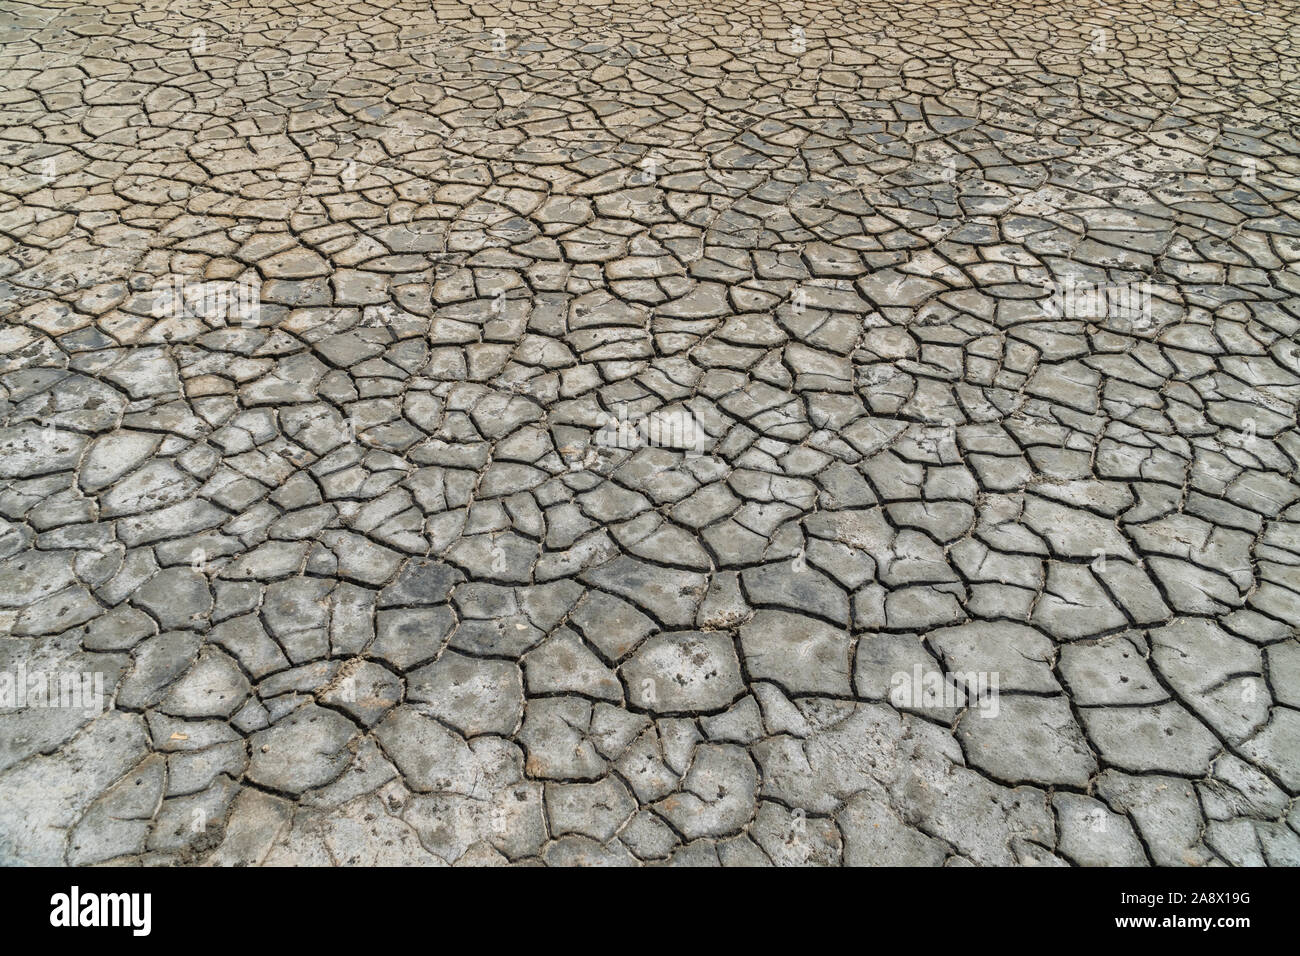 La sécheresse du sol d'une ancienne mer salée - question de l'environnement Banque D'Images